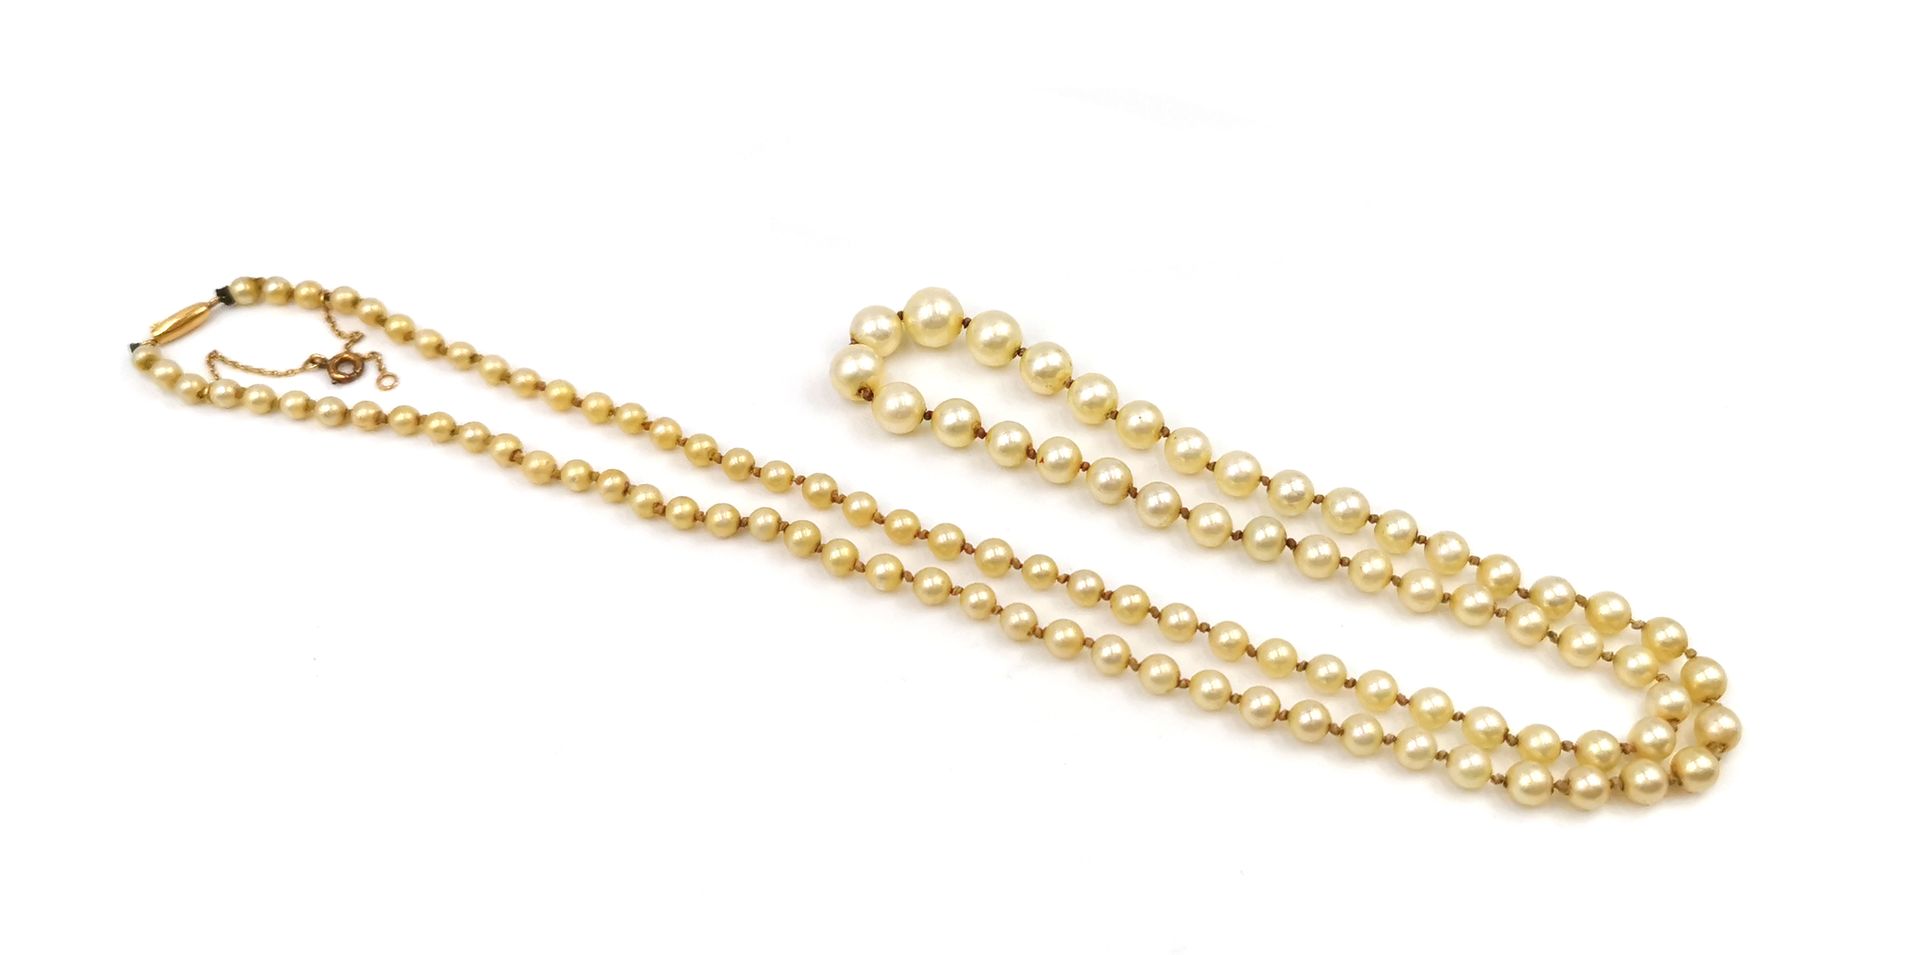 Null 乳白色养殖珍珠制成的长项链。18K金的扣子和安全链

长度：66厘米

毛重：21.3克。